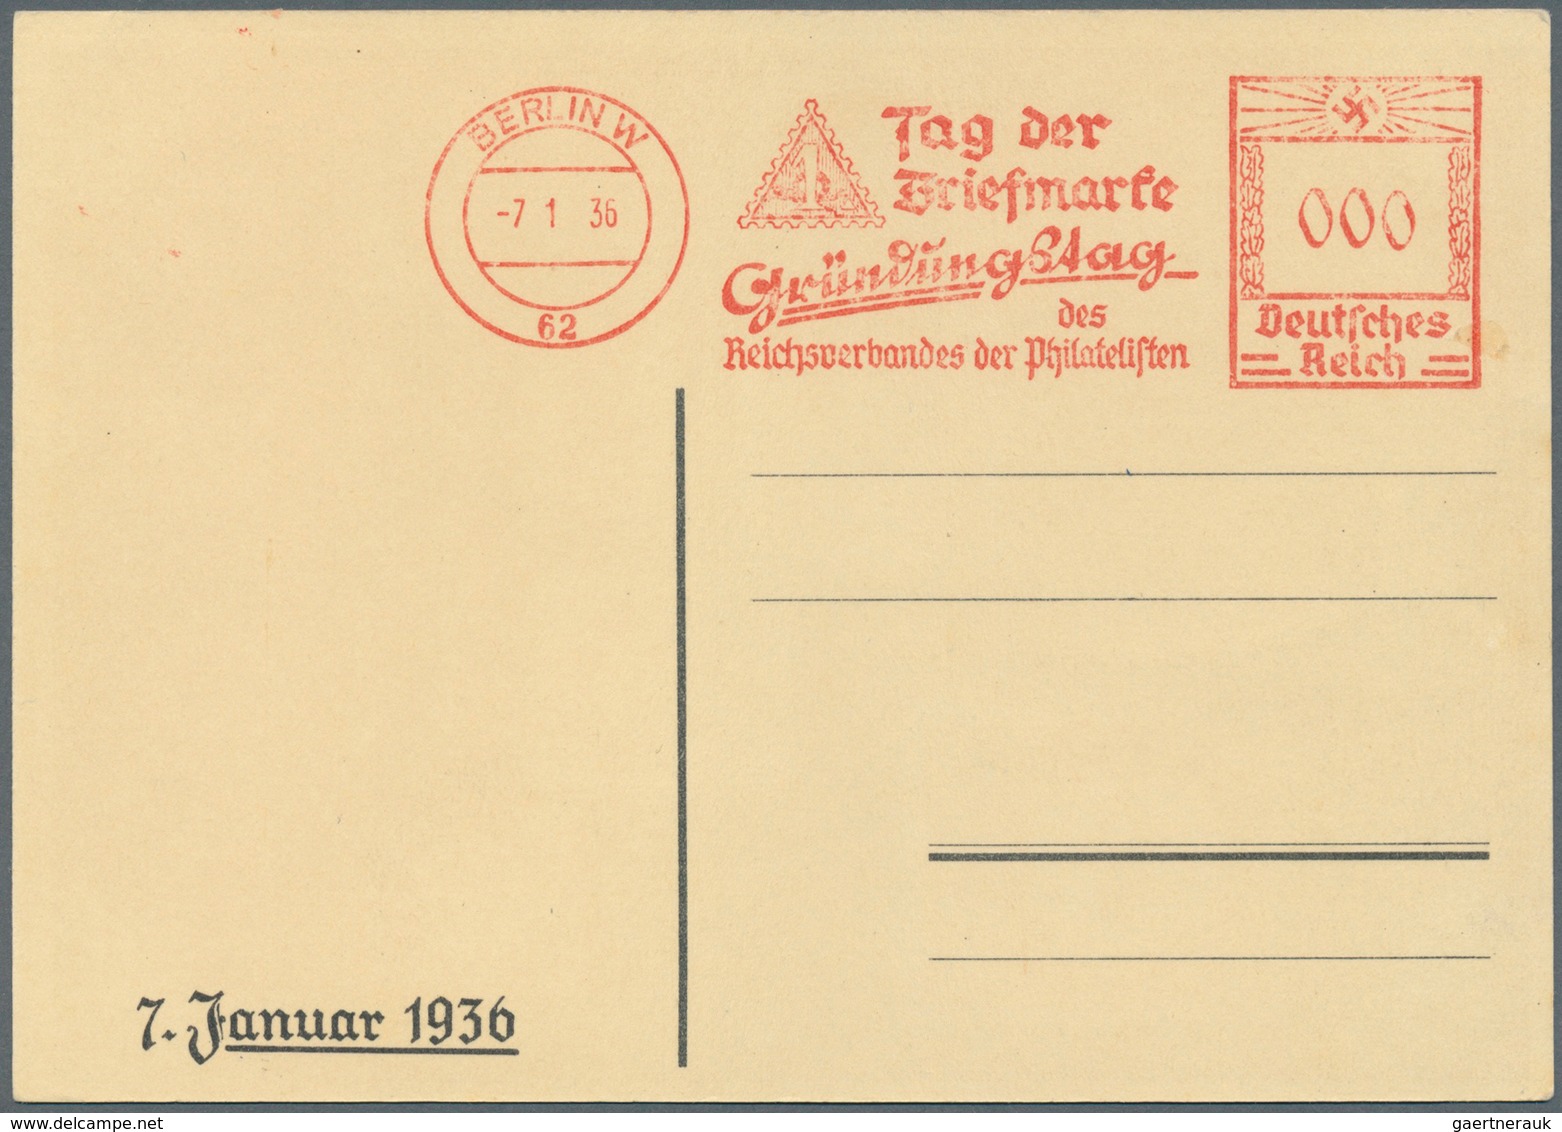 25417 Thematik: Philatelie - Tag der Briefmarke / stamp days: Ab ca. 1935: DEUTSCHLAND, umfangreiche Samml